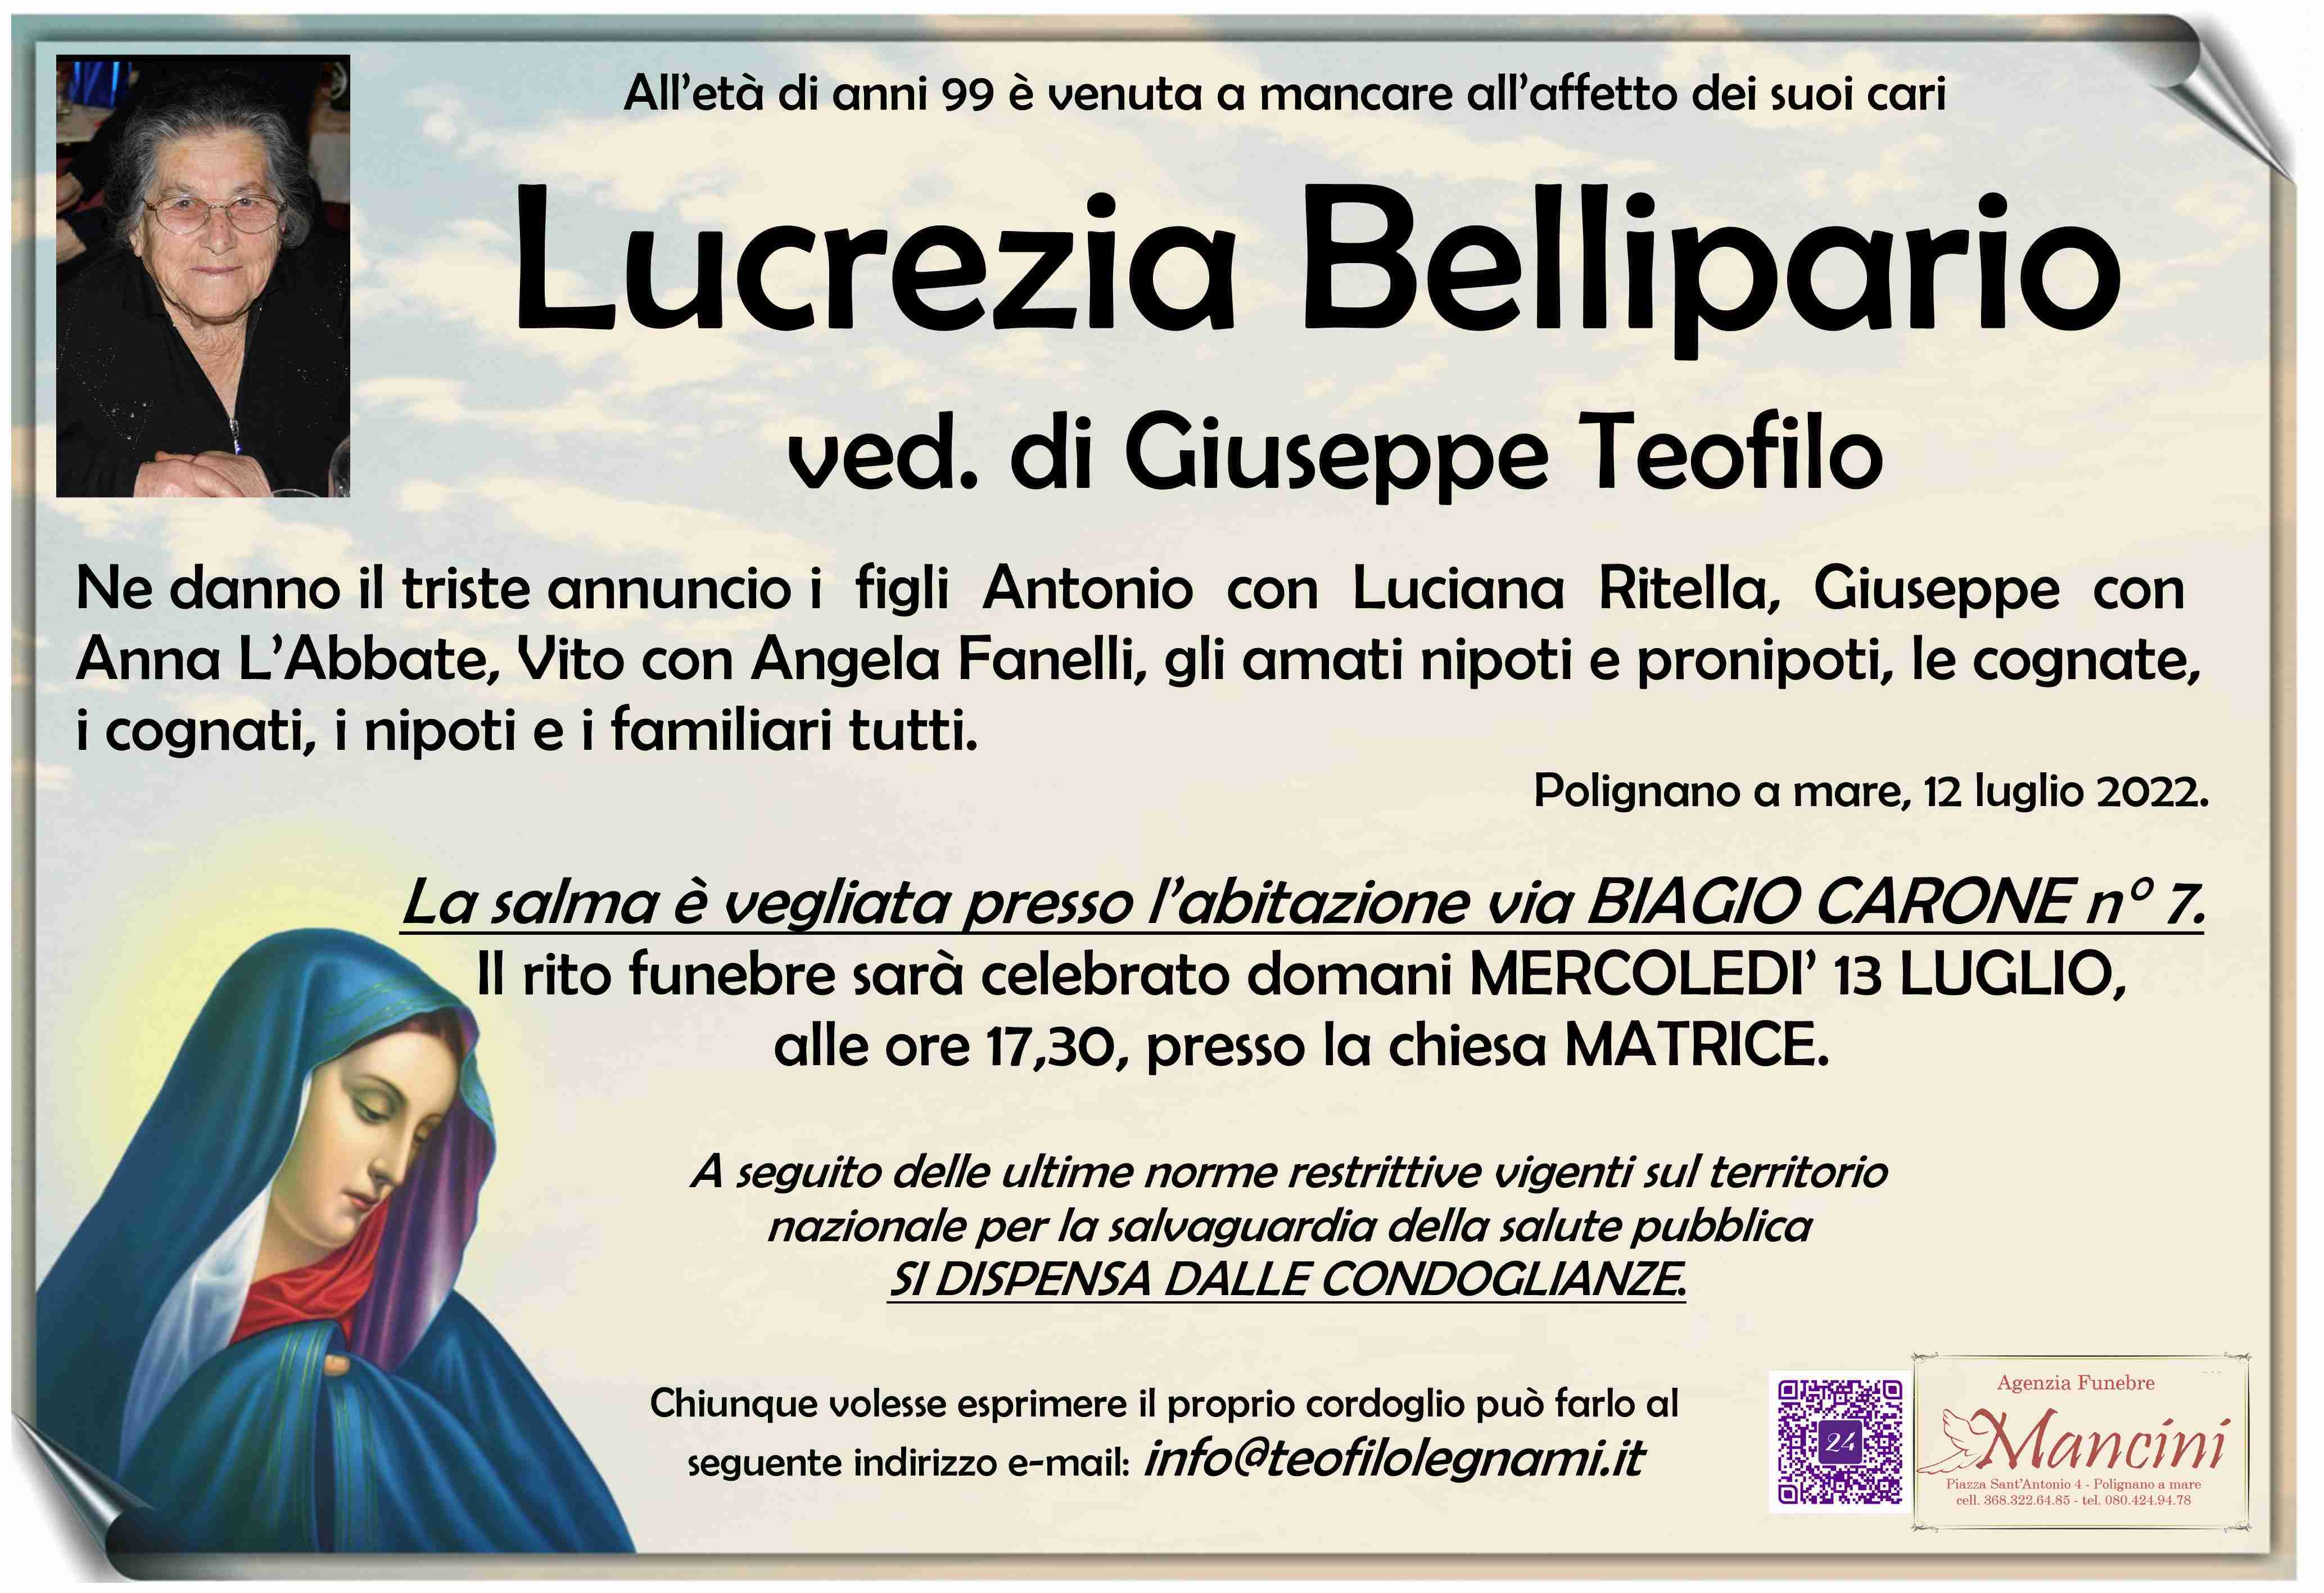 Lucrezia Bellipario